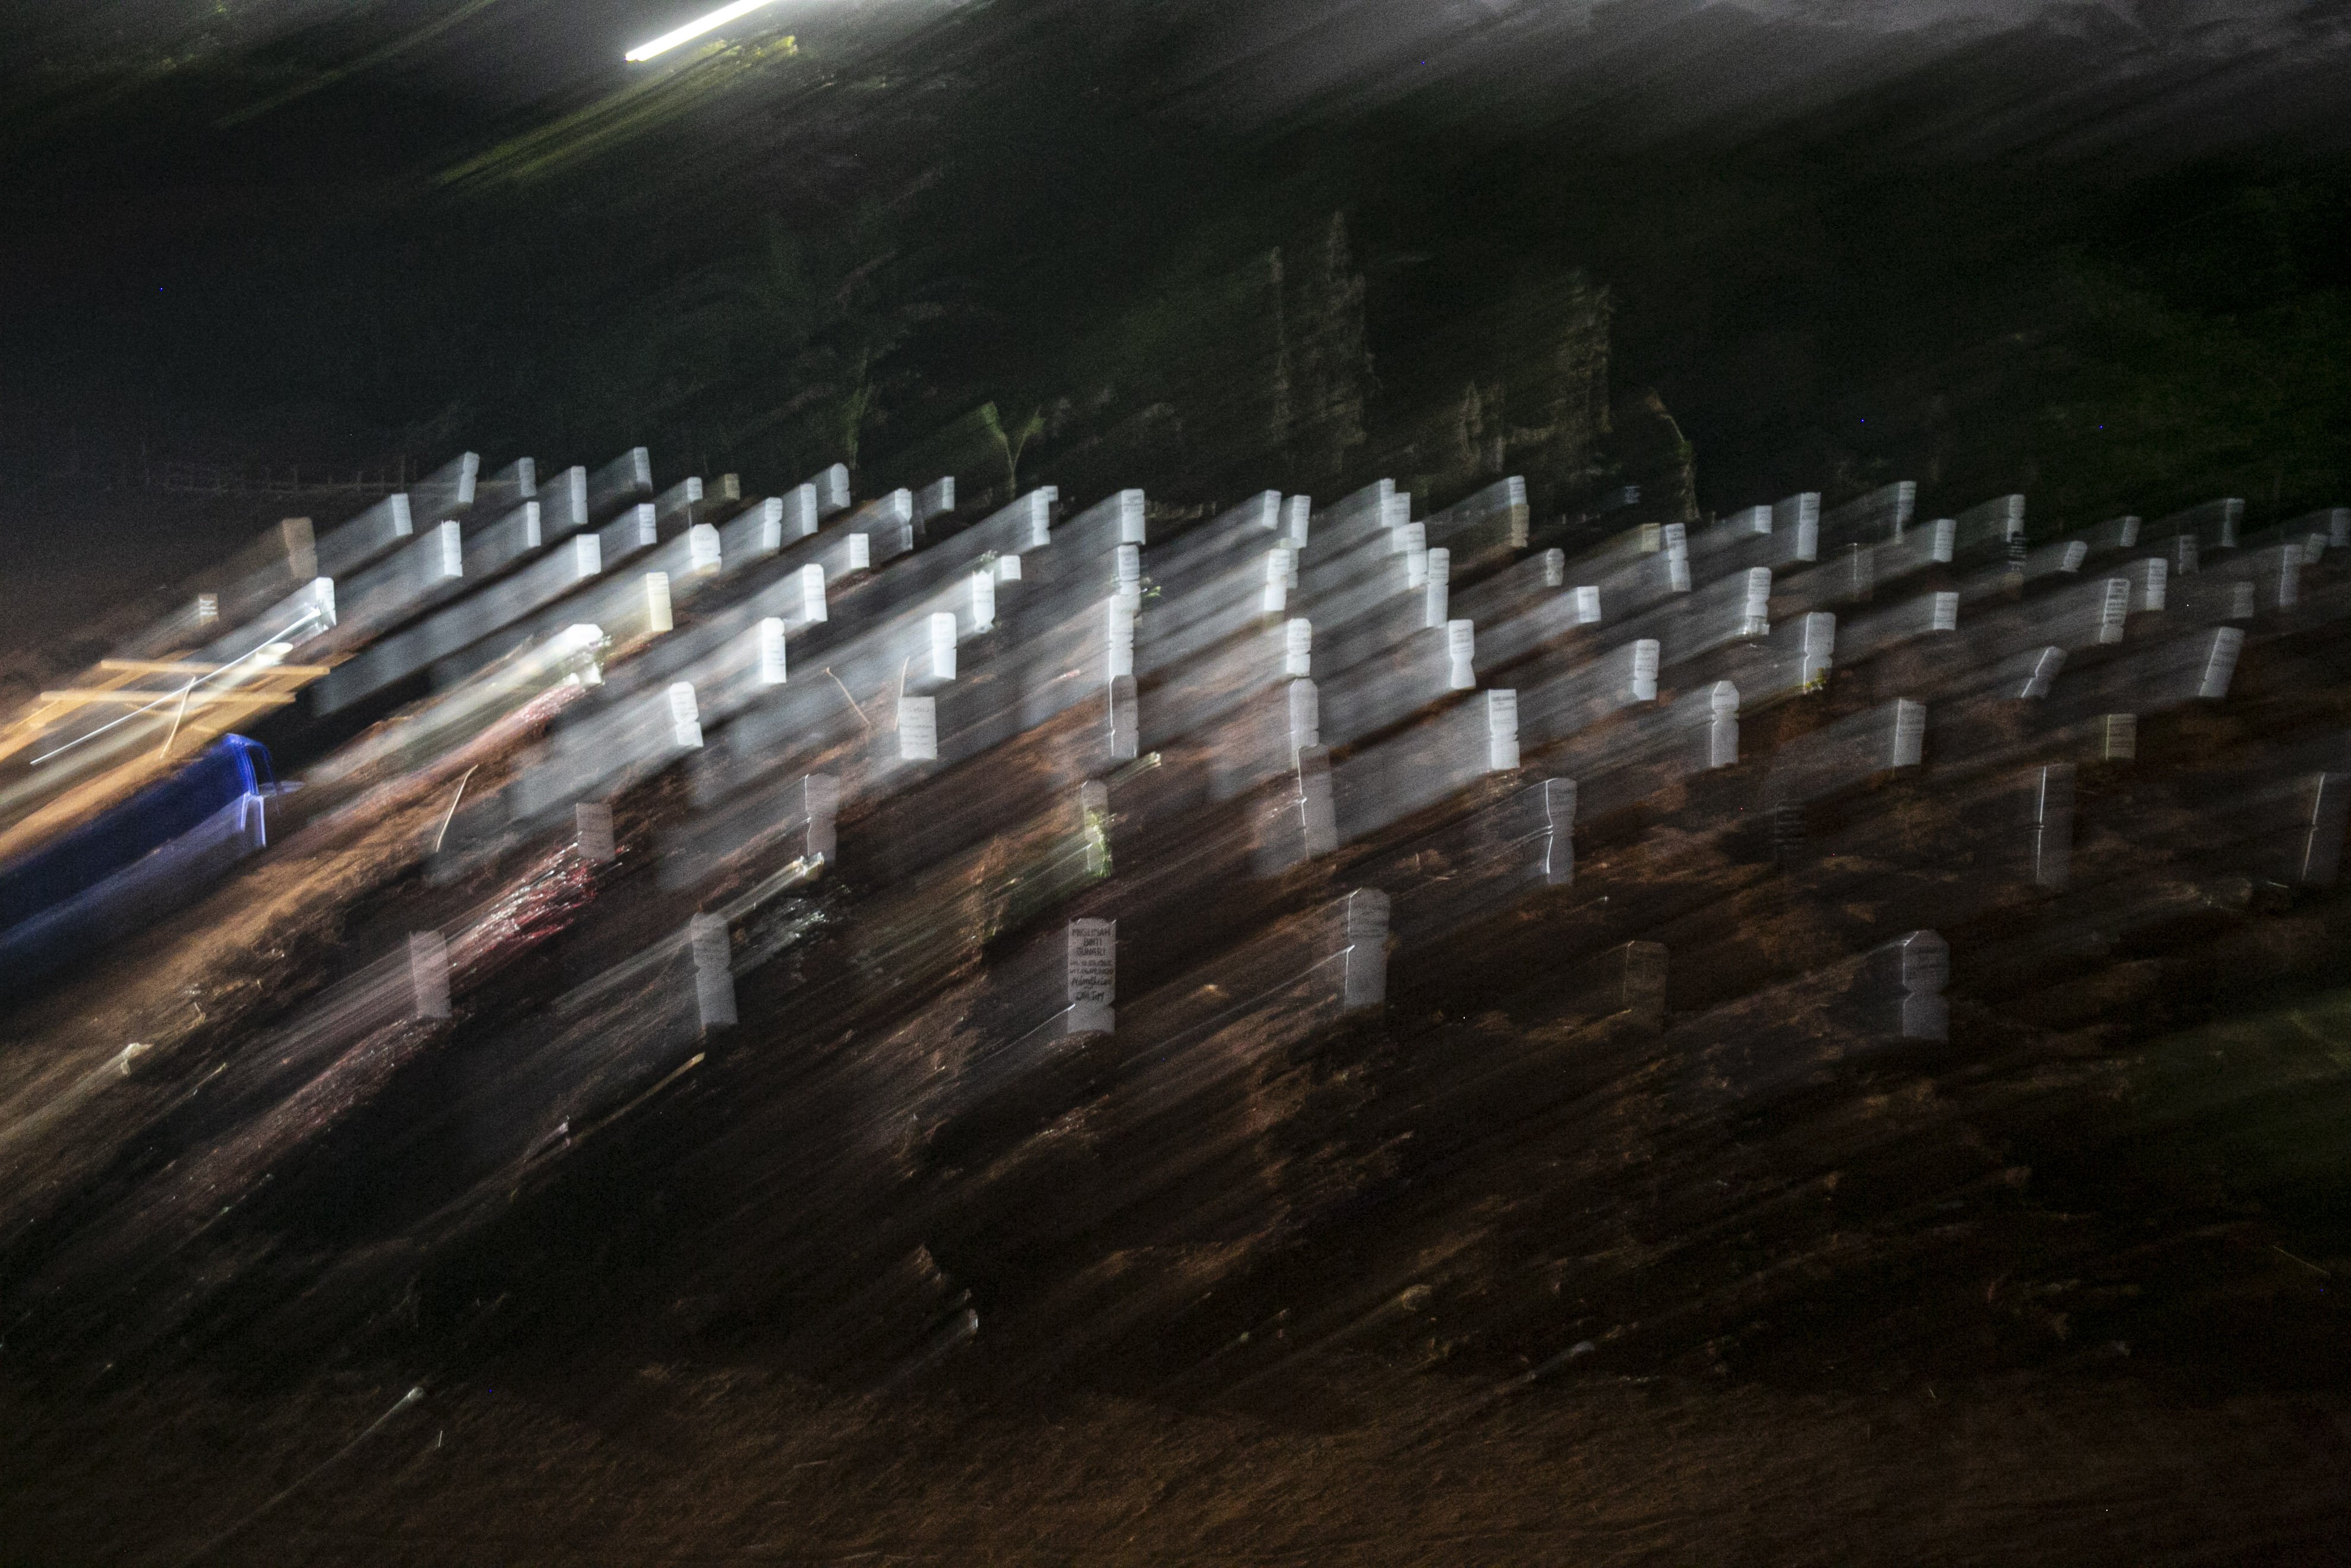 Kapasitas liang lahat untuk jenazah dengan protokol Covid-19 di TPU Pondok Ranggon, Jakarta Timur hampir penuh. Pemakaman jenazah Covid-19 itu diperkirakan penuh pada Oktober 2020.Komandan Regu PJLP TPU Pondok Ranggon, Nadi menyatakan, pihaknya telah menyiapkan 1.100 lubang pemakaman untuk jenazah Covid-19 sejak akhir Agustus 2020.